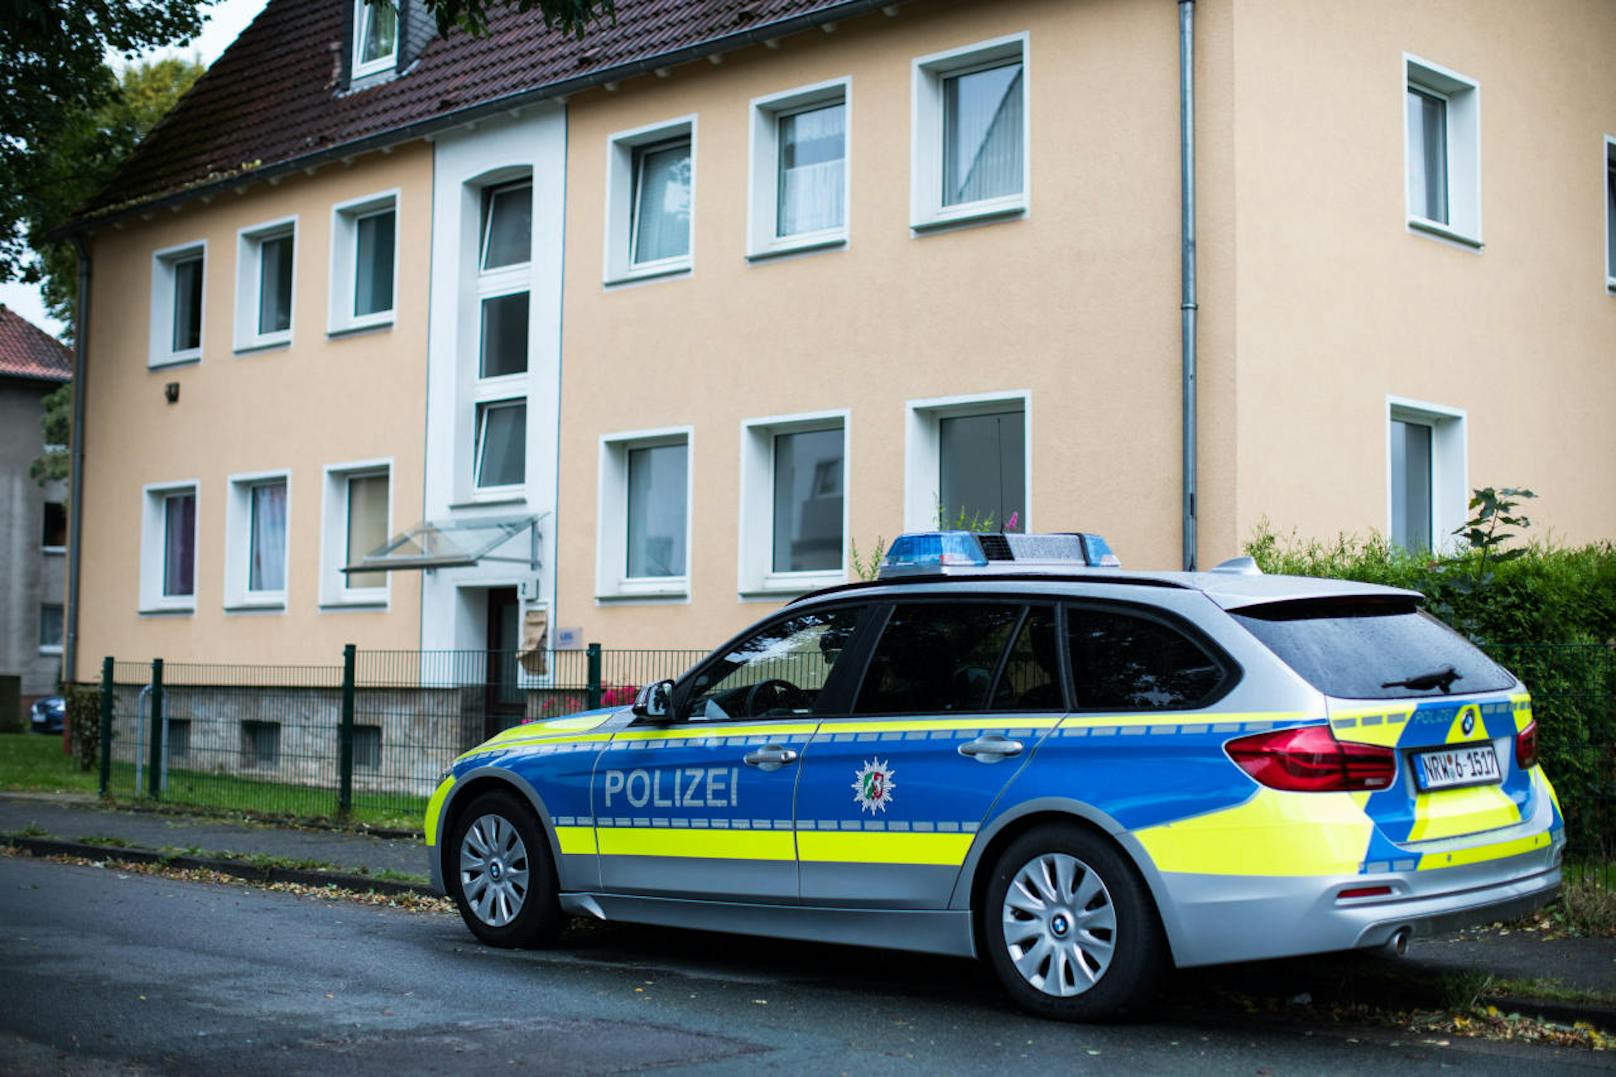 Der 53-Jährige konnte erst am 14. September nach einer Öffentlichkeitsfahndung der Polizei in Hamburg festgenommen werden und sitzt seitdem in Haft.